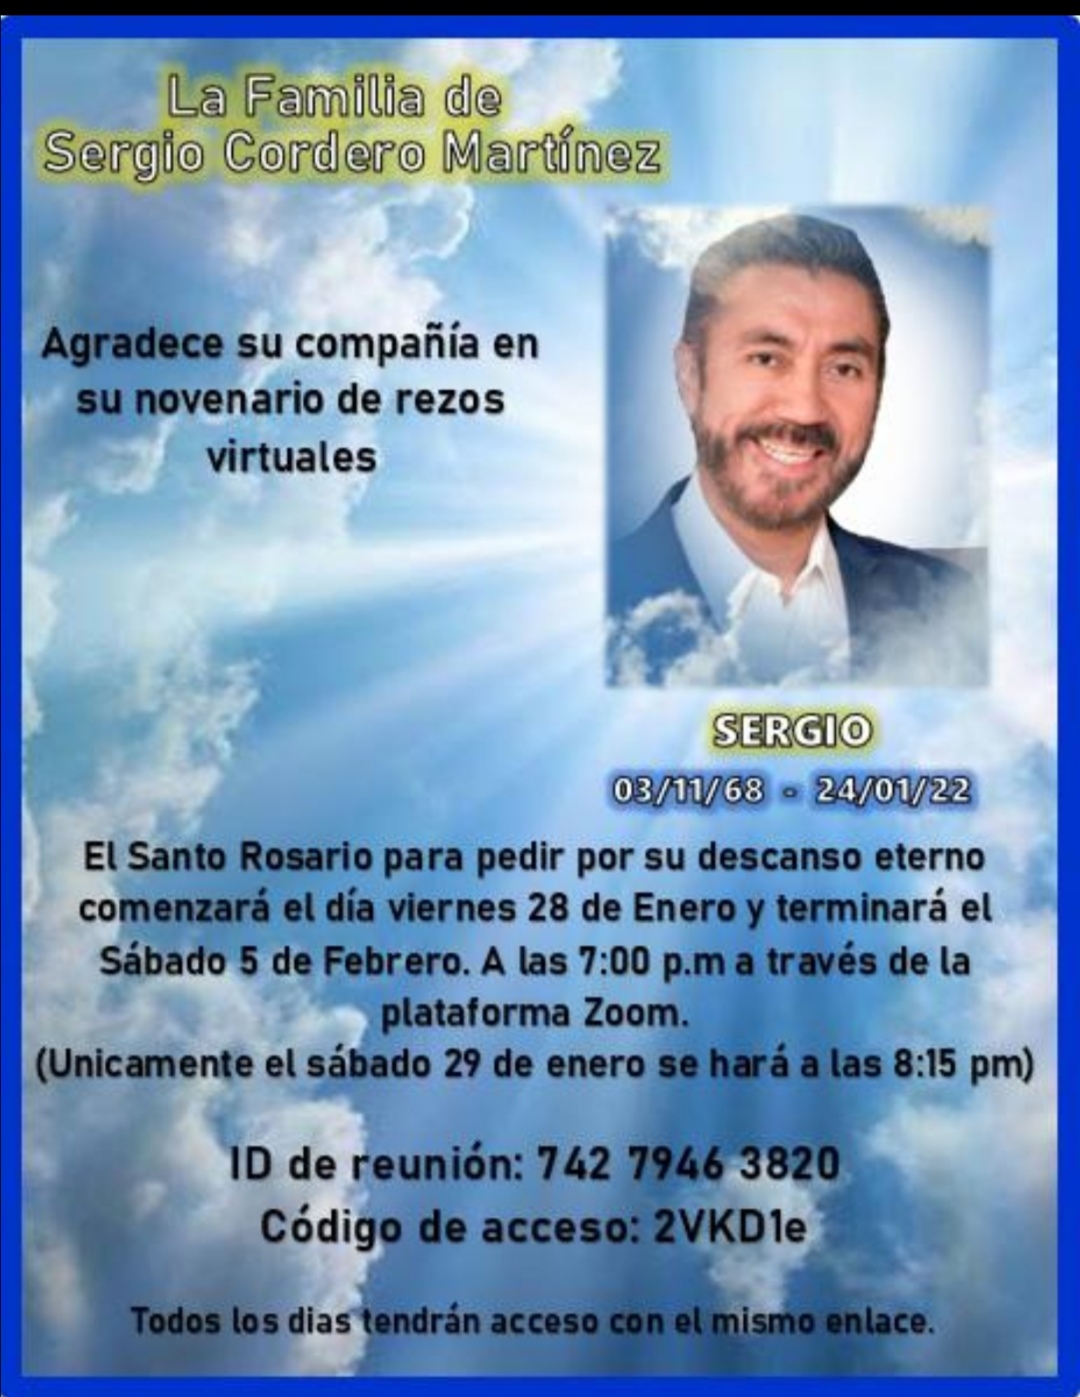 Santo Rosario para pedir por el descanso eterno de Sergio Cordero Martínez